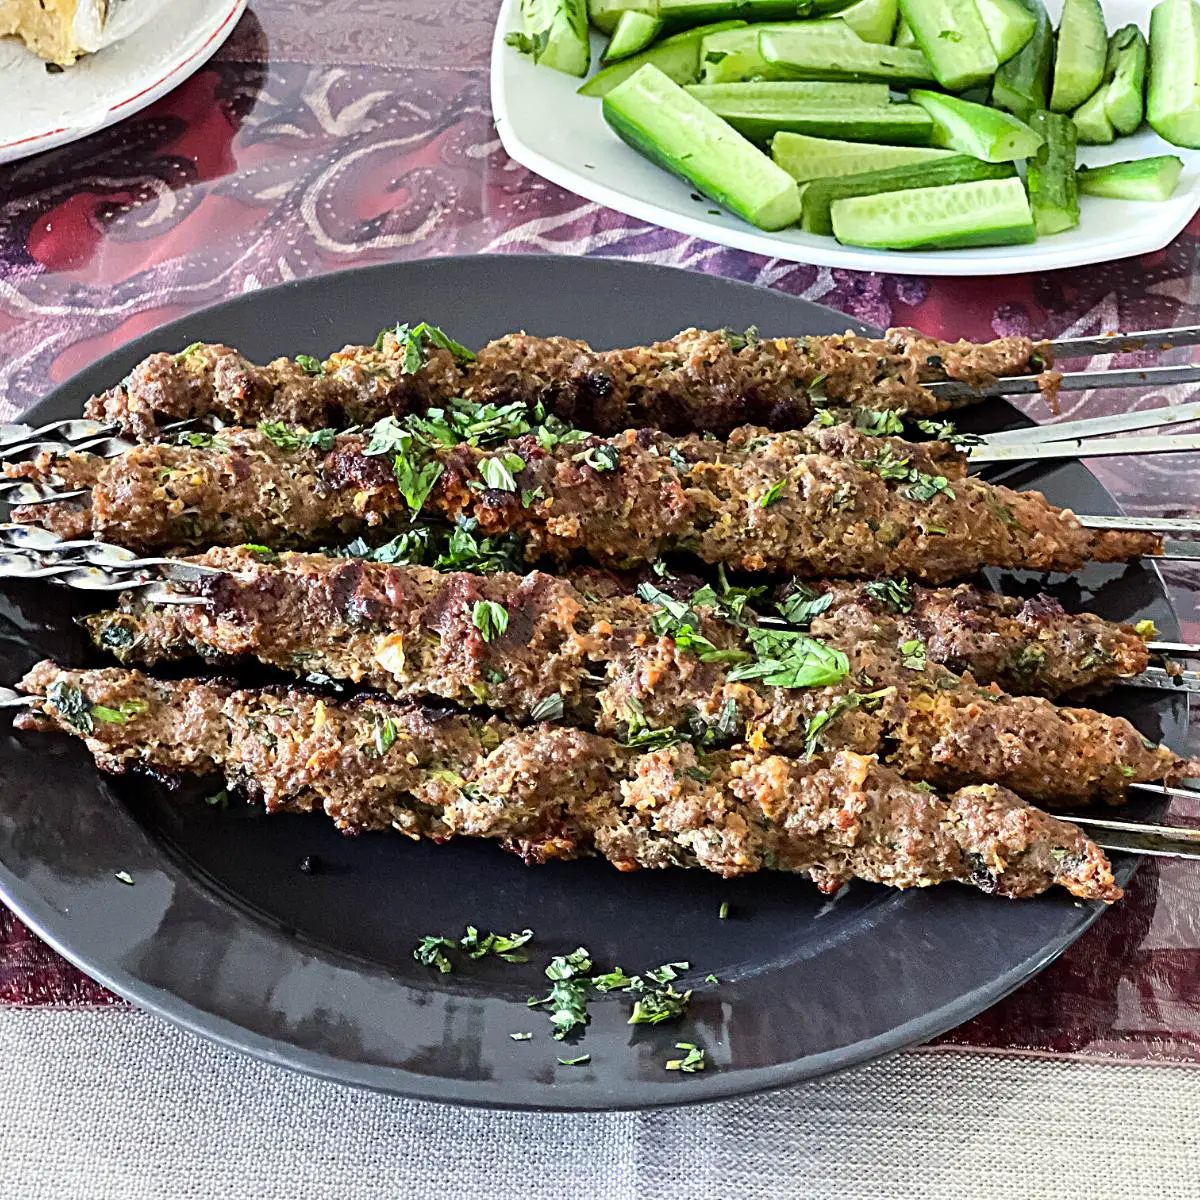 A plate with kebab skewers.